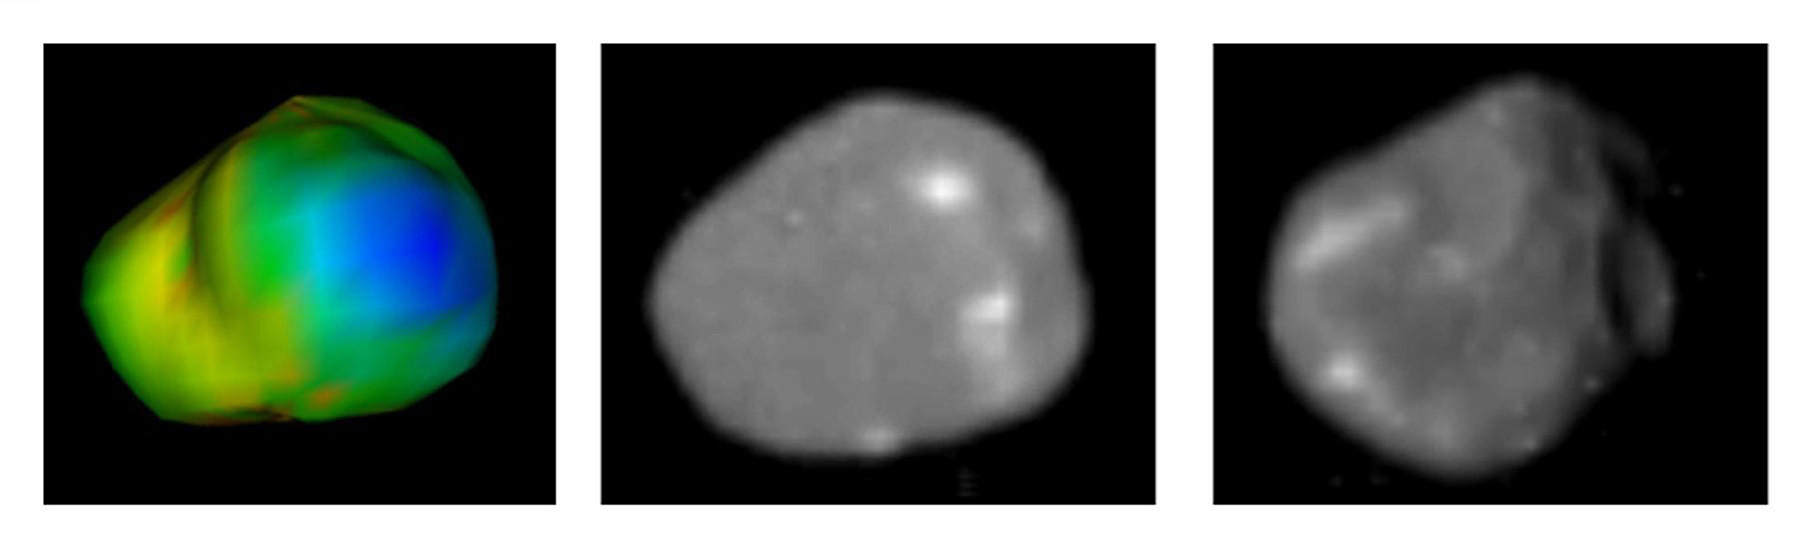 Immagini di Amalthea fotografate dalle sonde Voyager e Galileo